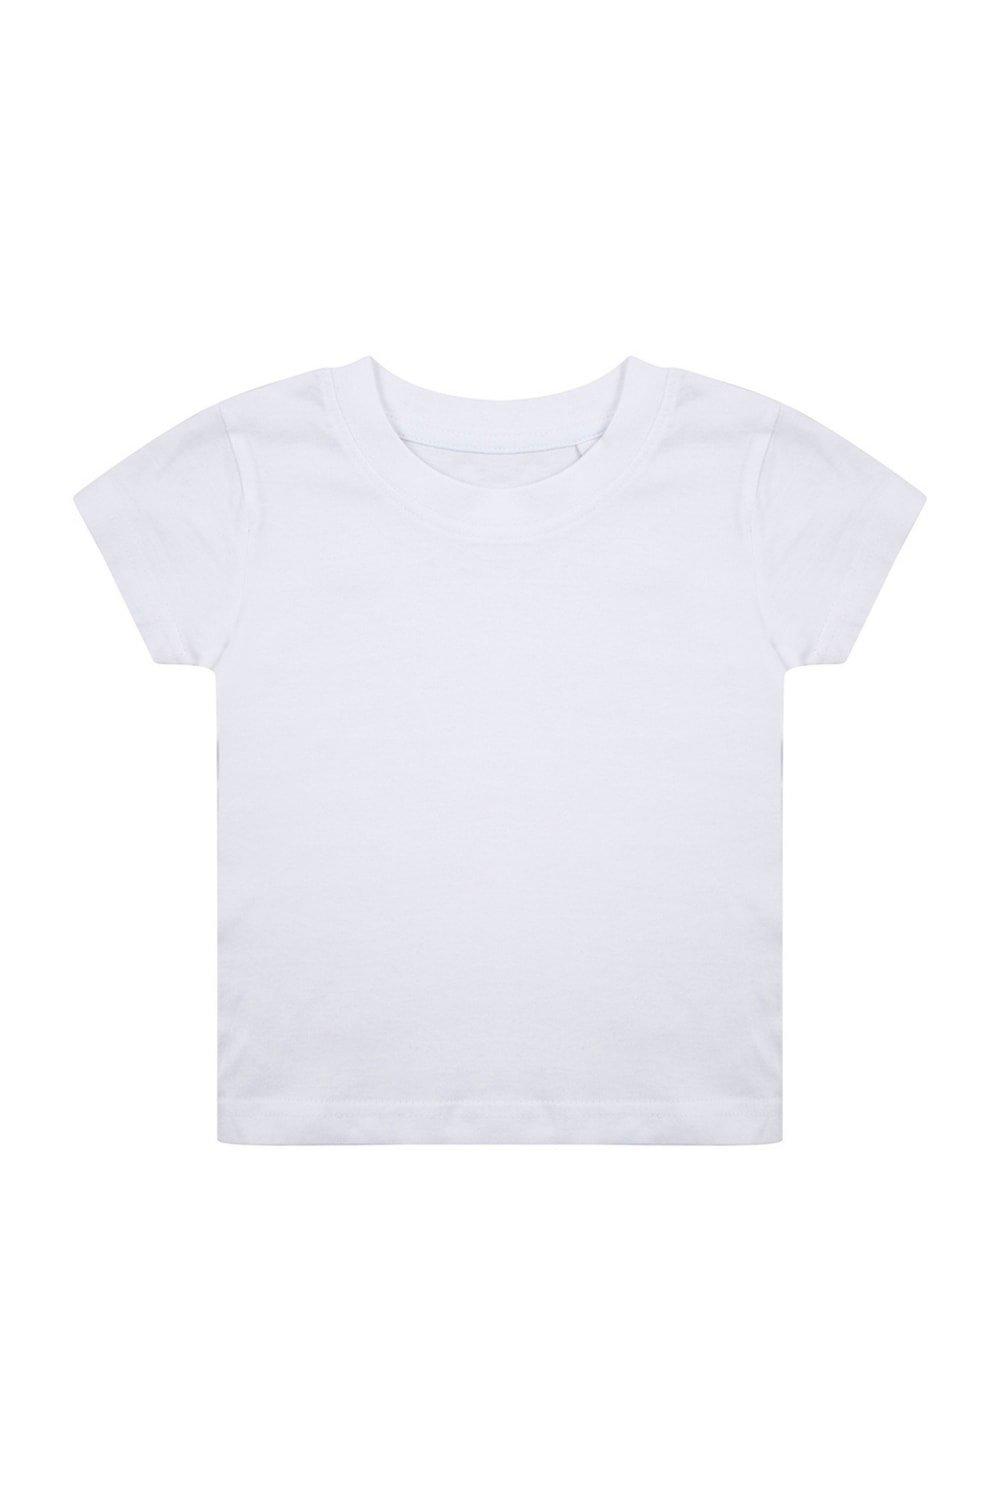 Органическая футболка Larkwood, белый мир животных 24 36 мес